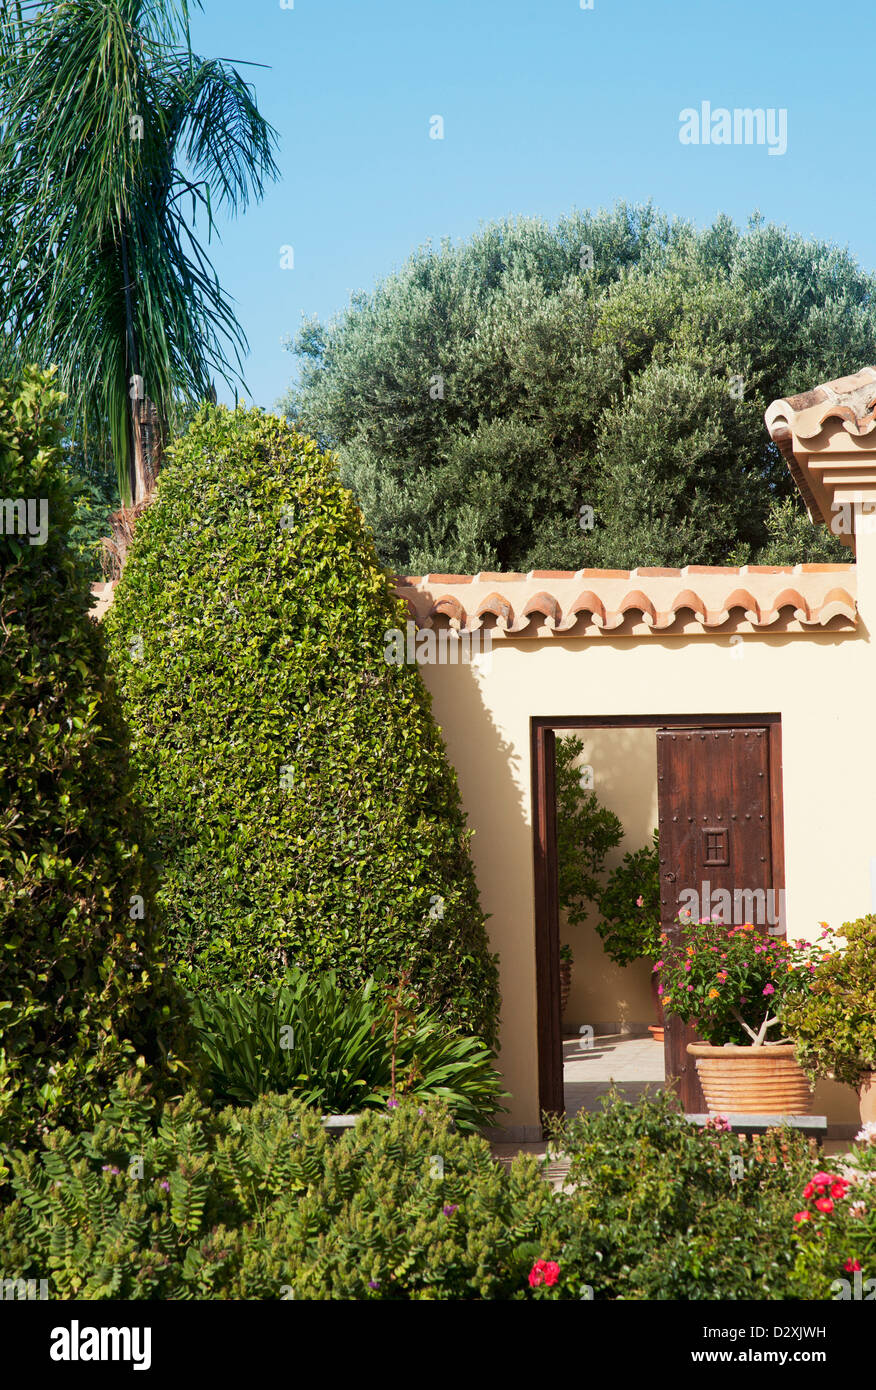 Garden surrounding courtyard doorway of luxury villa Stock Photo